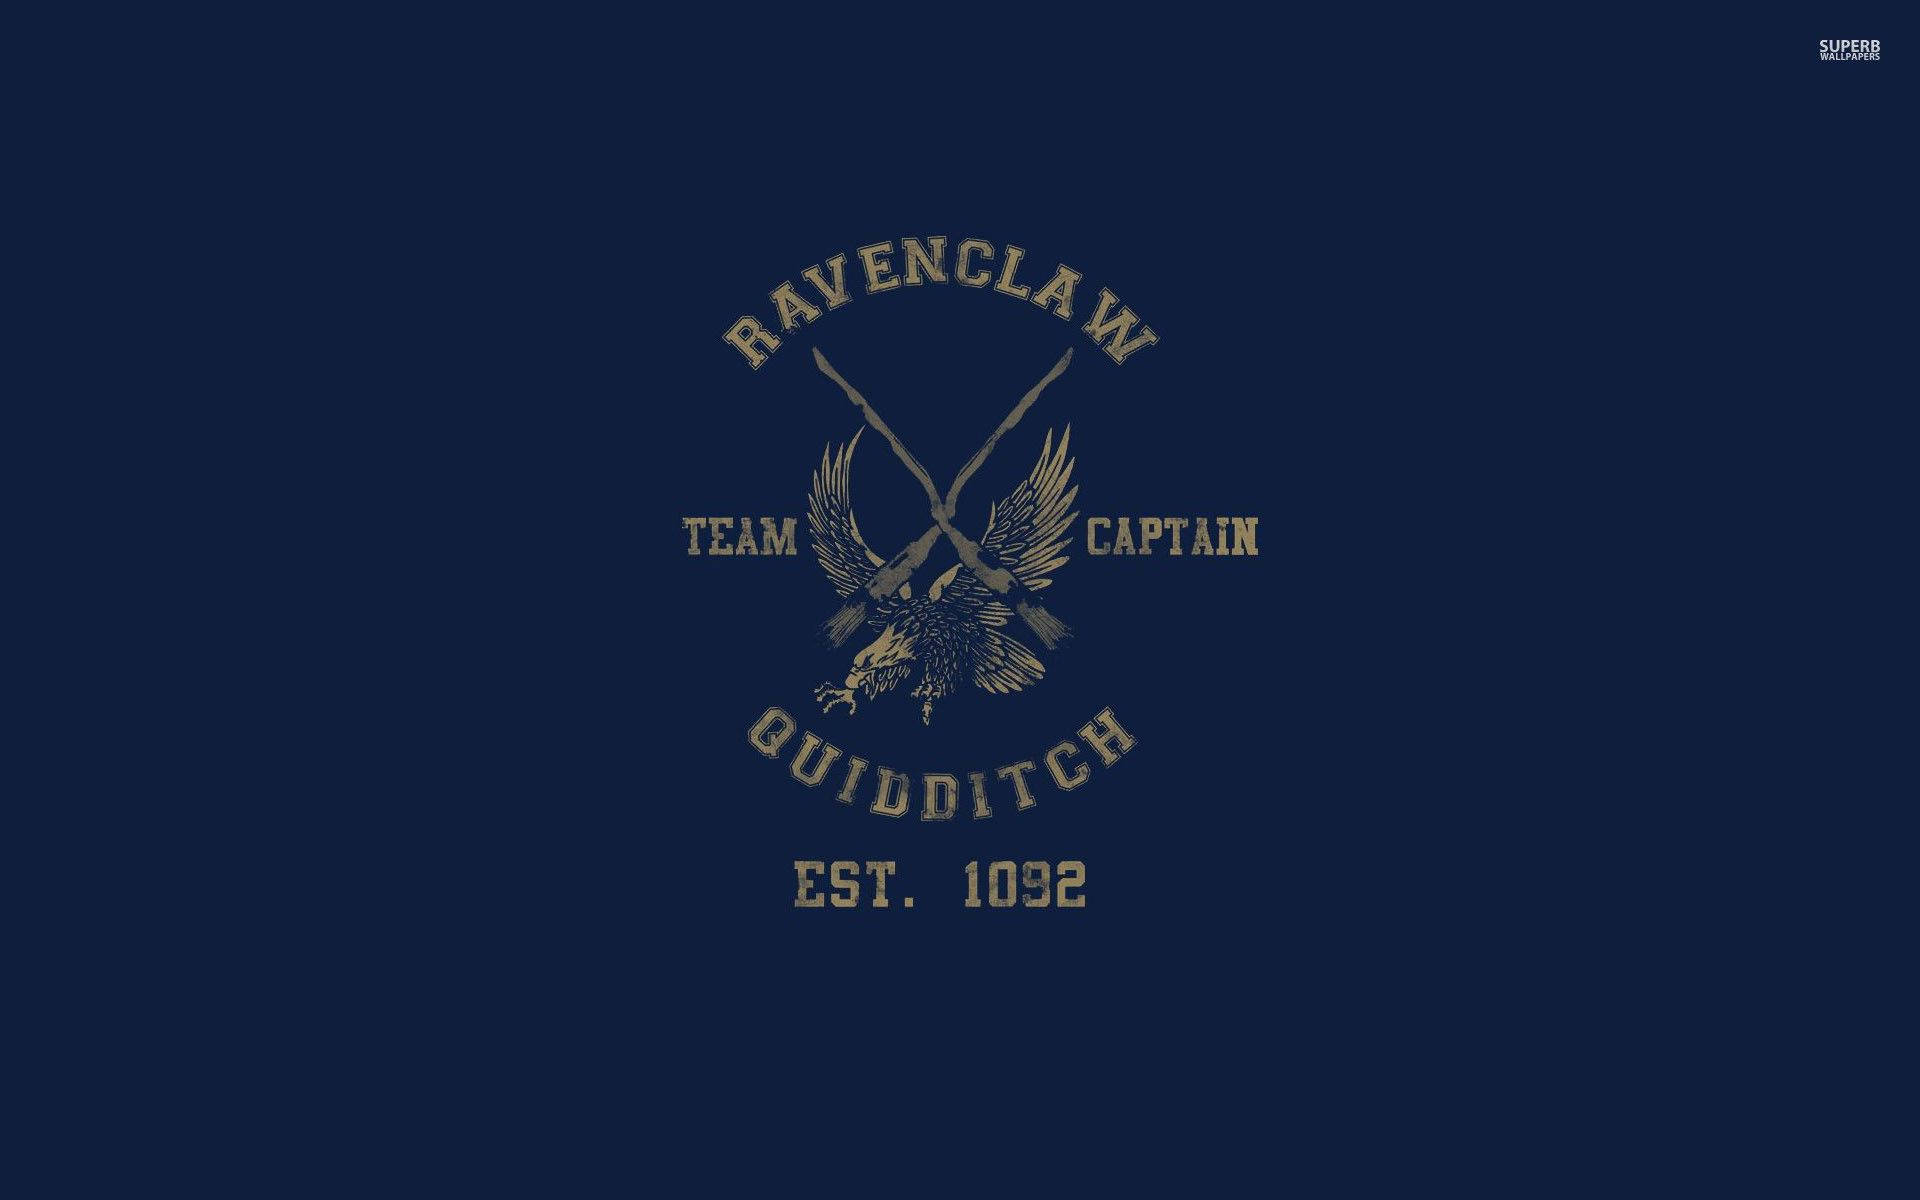 Quidditch Ravenclaw Team Background